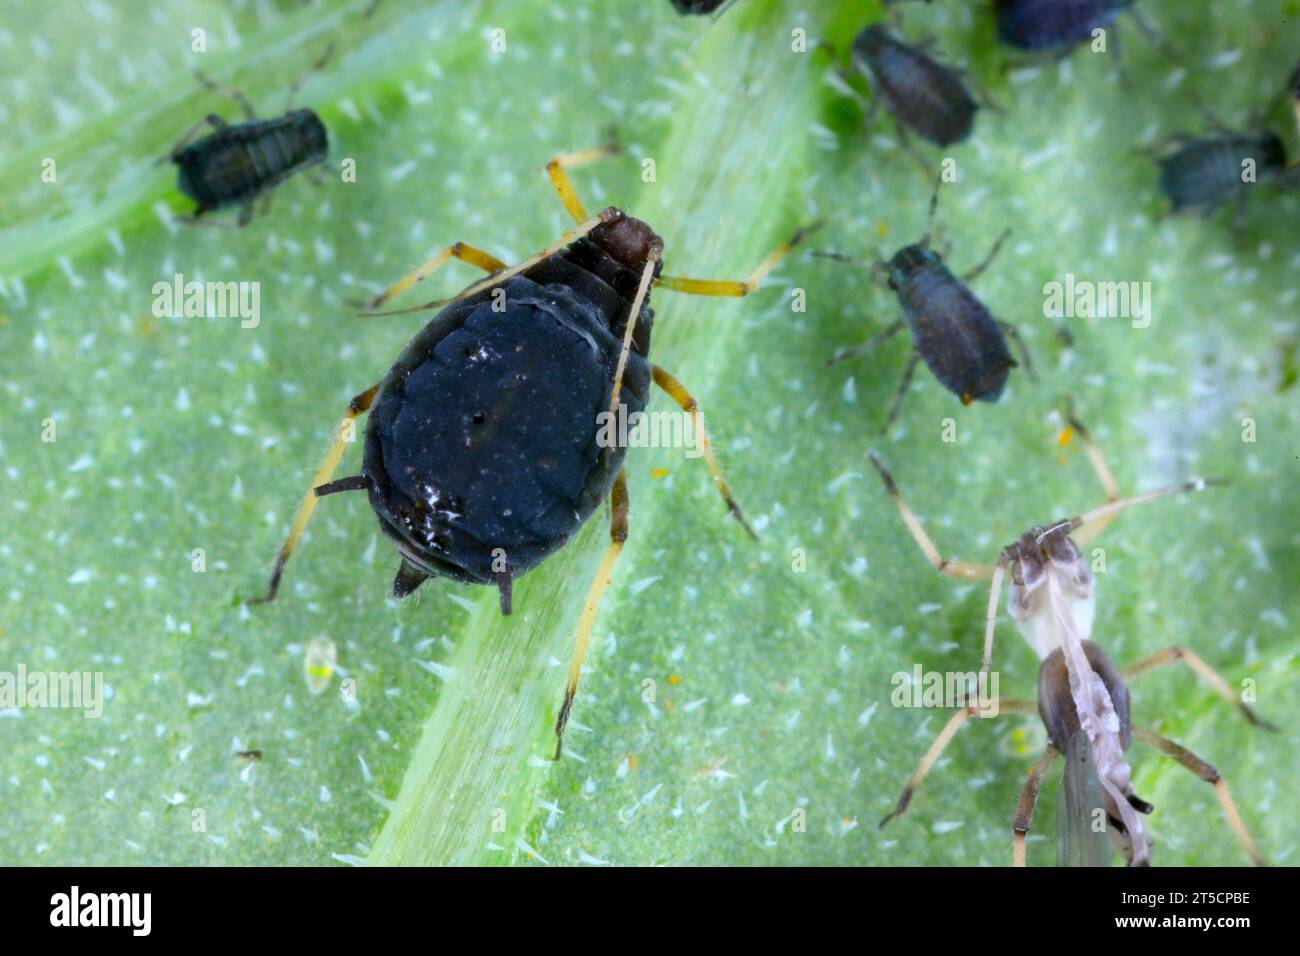 Una familia de Aphis fabae áfidos (áfido) frijoles negros sobre una planta Foto de stock